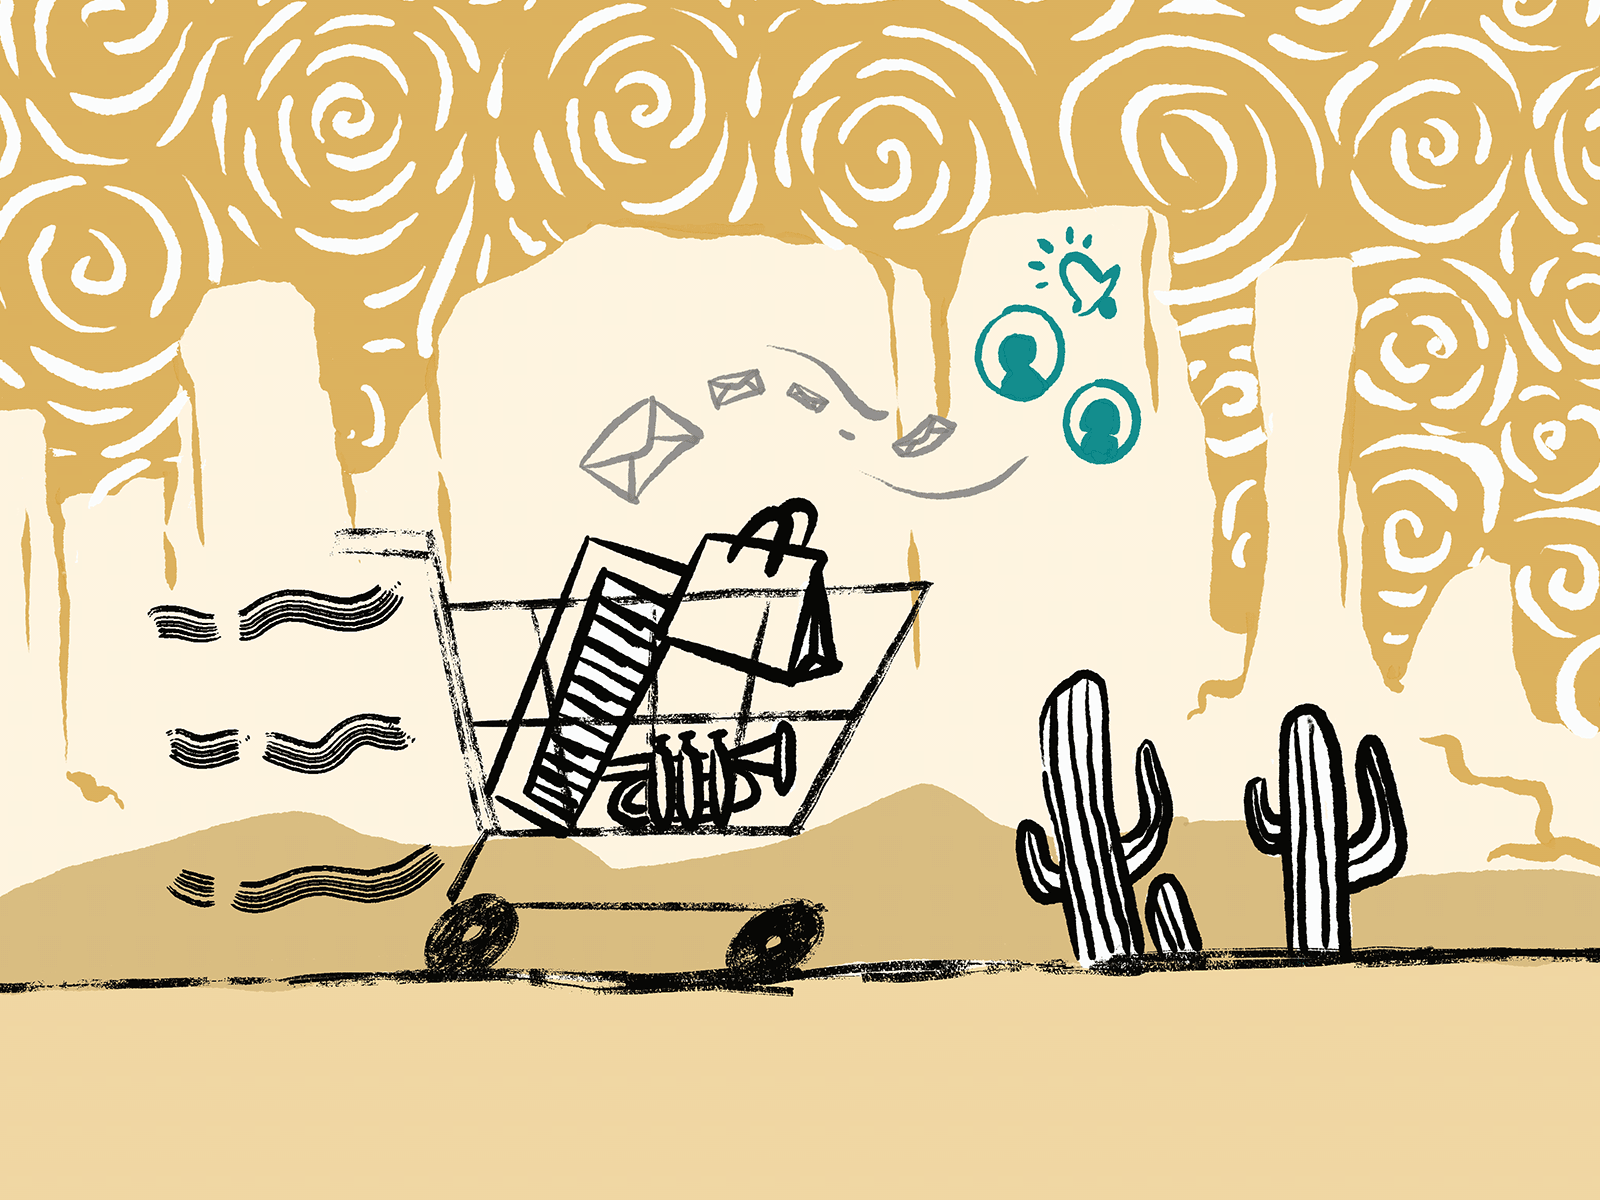 Reminding Your Abandoned Cart abandoned cart cart desert illustraion illustration illustration art notification webdesign